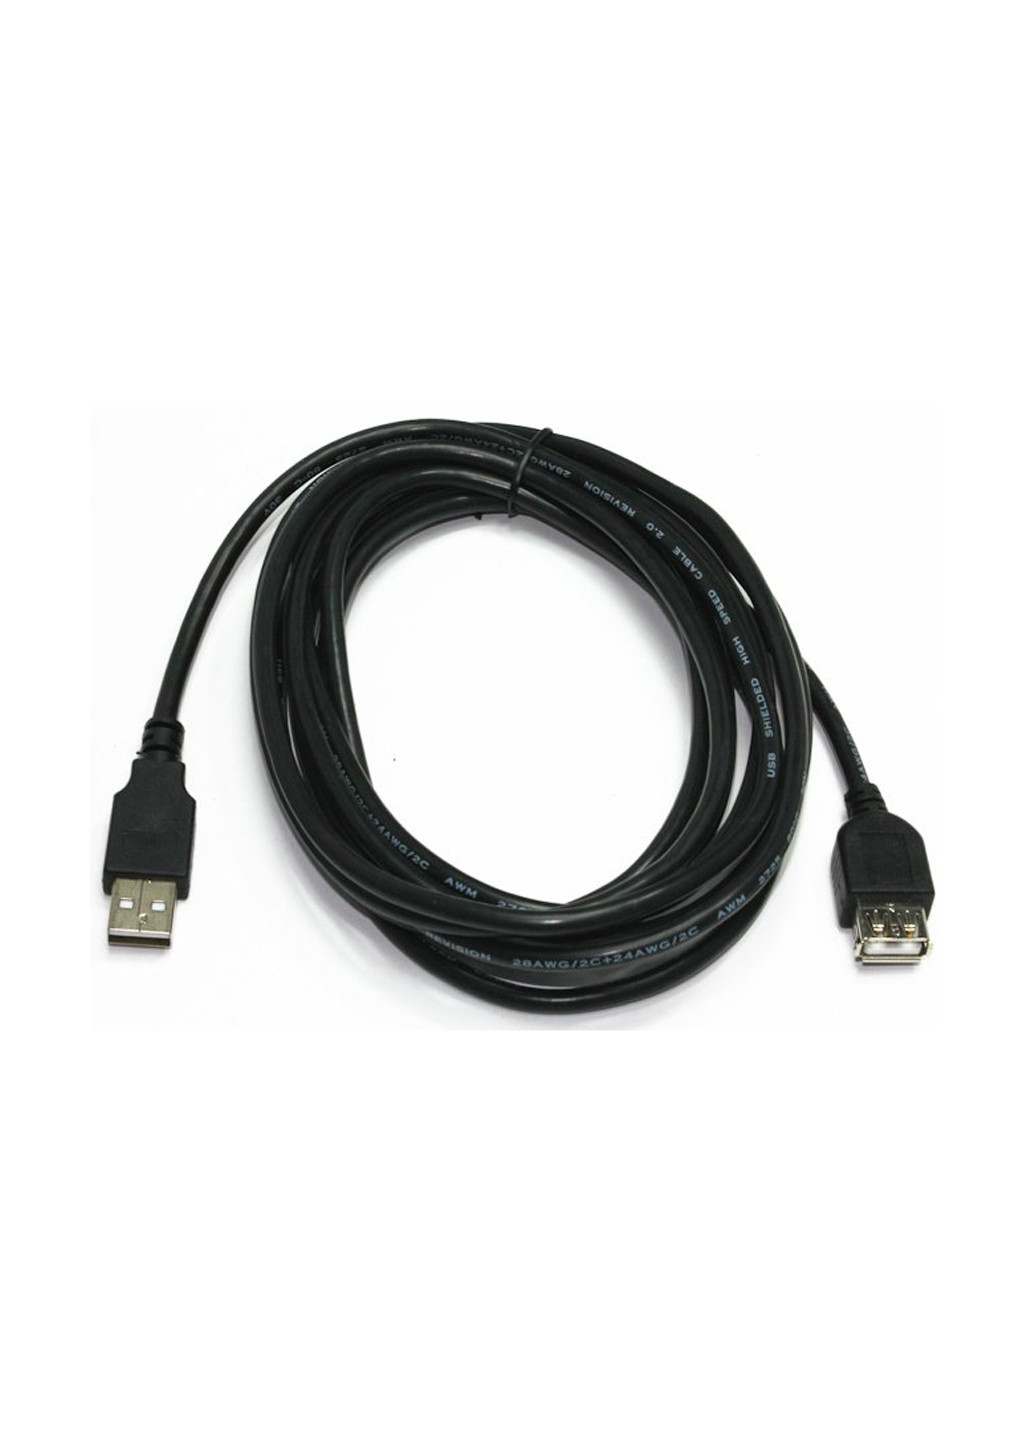 Подовжувач USB2.0, A-папа / А-мама, 1.8 м, преміум (CCP-USB2-AMAF-6) Cablexpert удлинитель usb2.0, a-папа/а-мама, 1.8 м, премиум (ccp-usb2-amaf-6) (137703572)